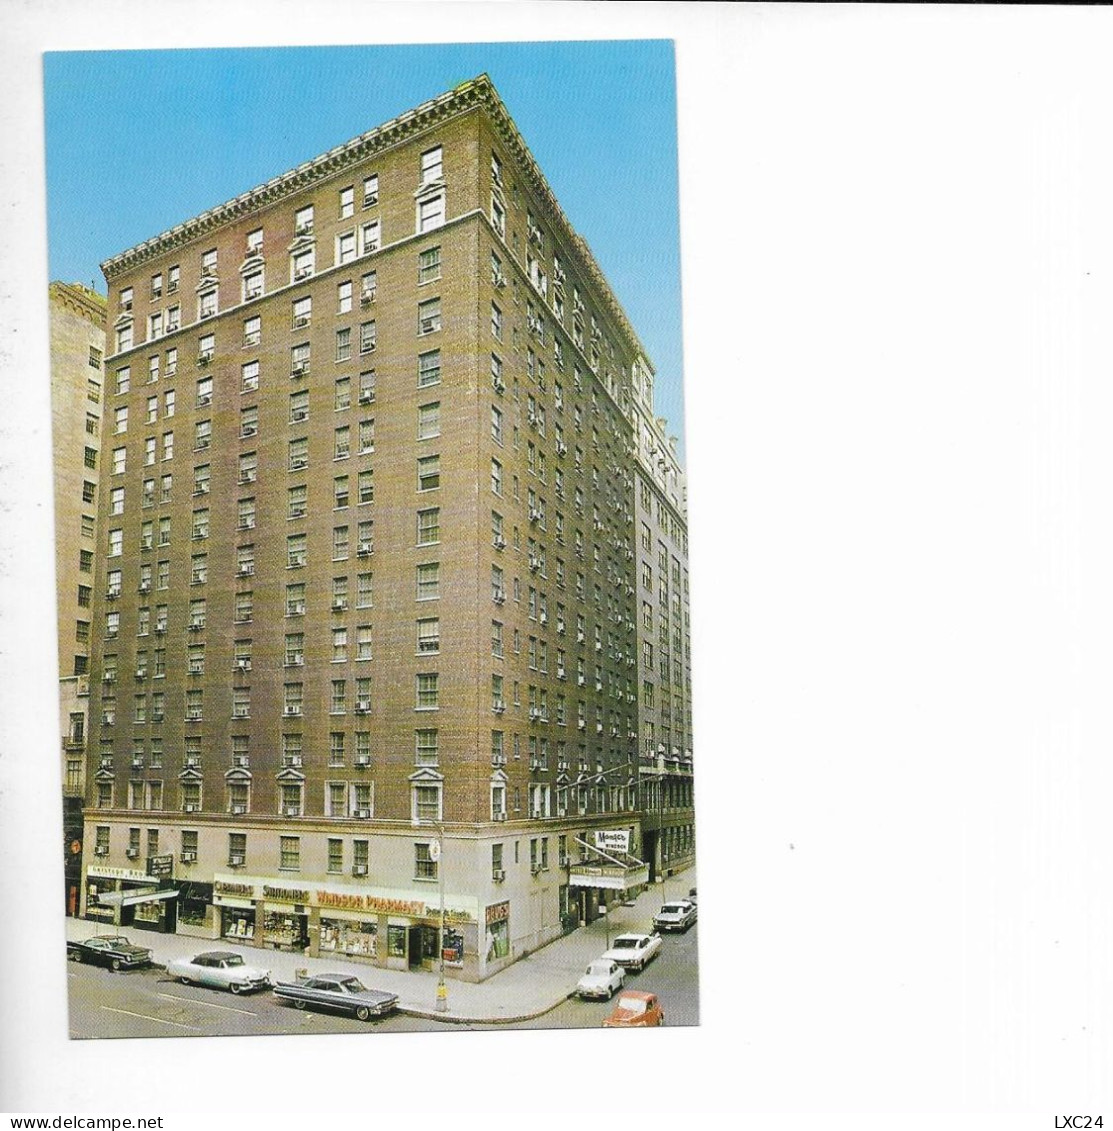 THE MANGER WINDSOR HOTEL. NEW YORK. - Bars, Hotels & Restaurants